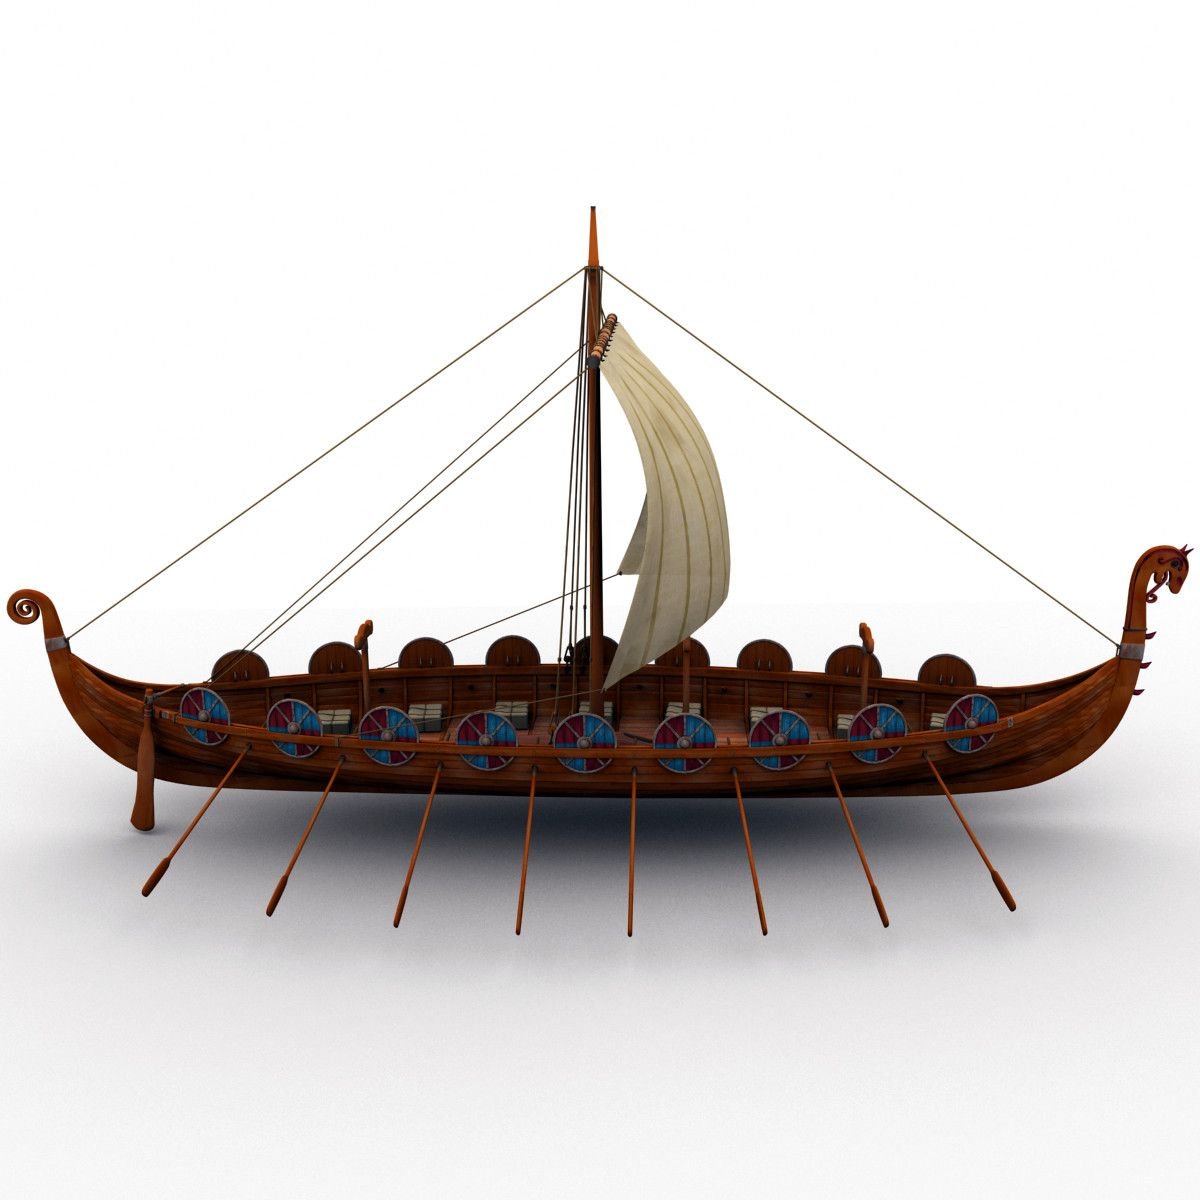 Ладья песни. Ладья Драккар викингов. Лодка викингов дракар. Корабль викингов Драккар 10 век. Модель корабля Viking ship Drakkar 3d модель.